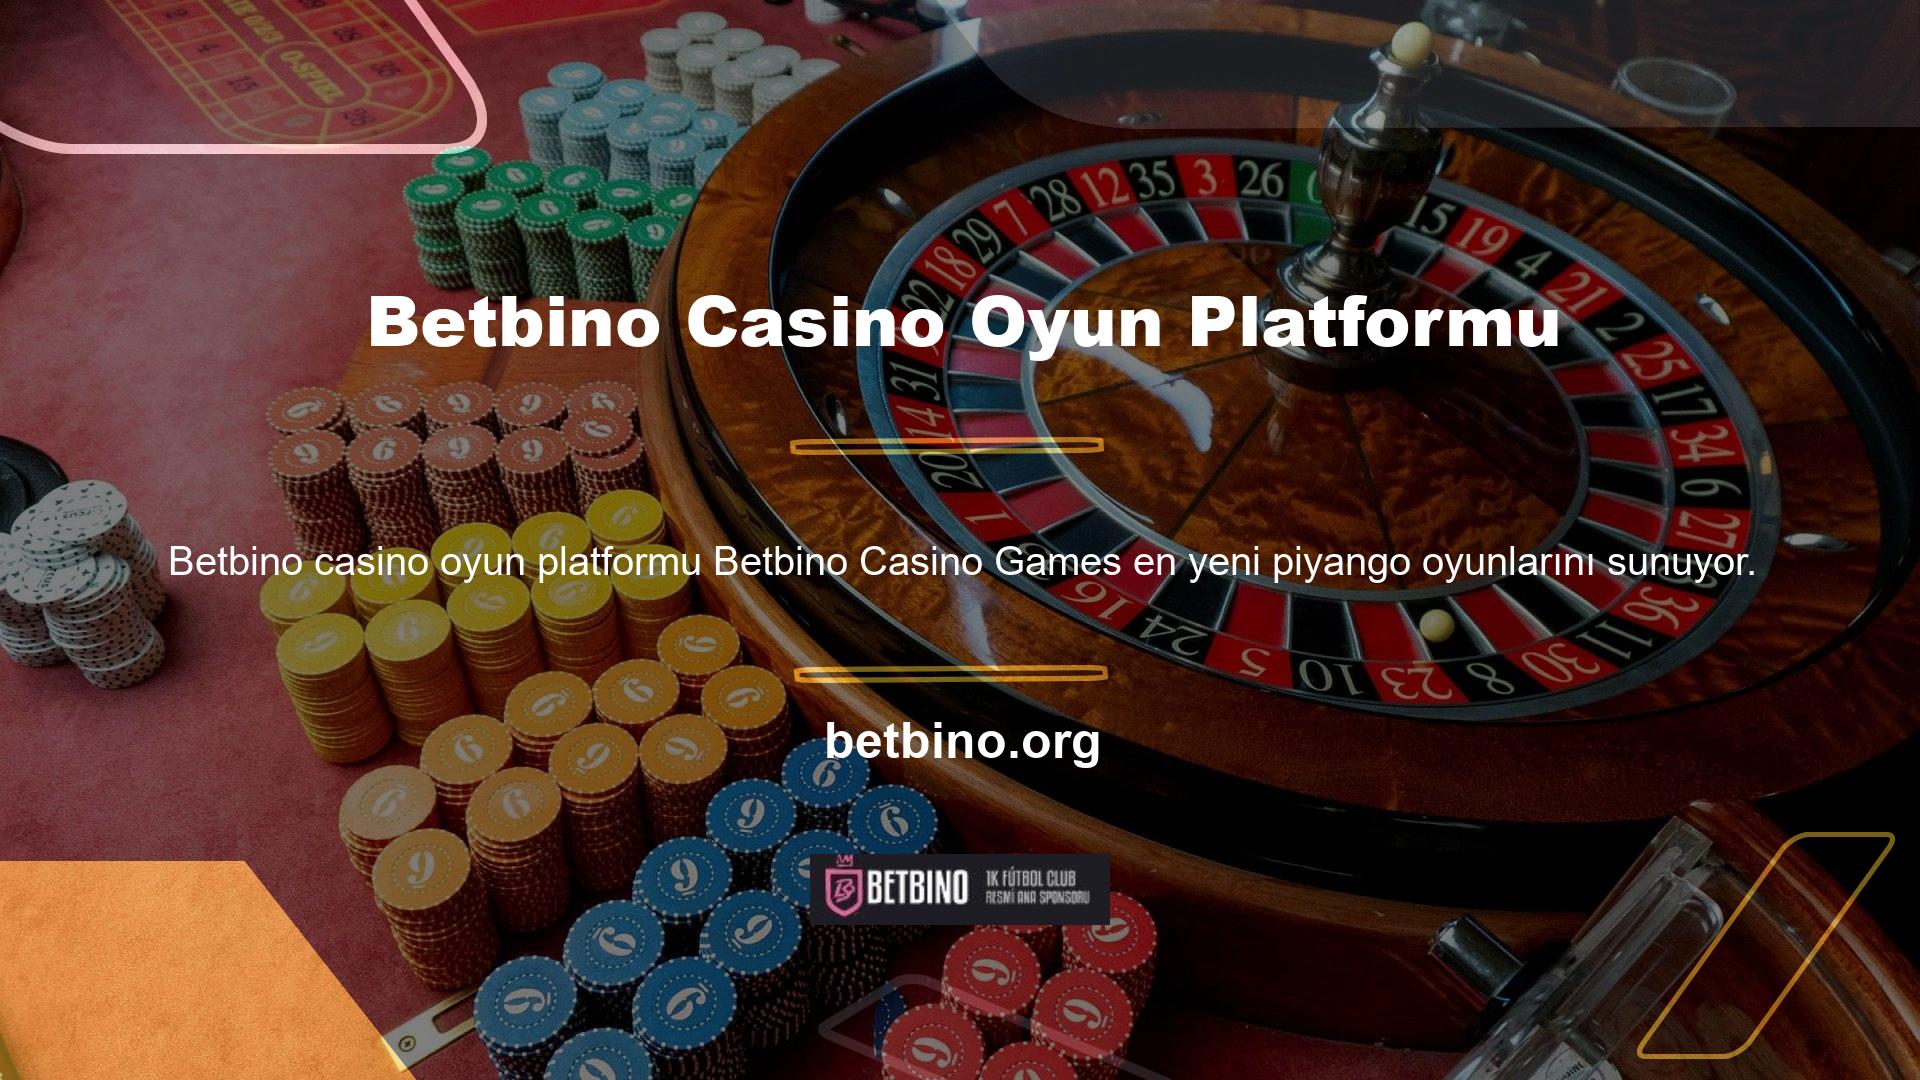 Sayısız oyuncu Betbino casino oyun platformu casino oyunlarında casino oynuyor